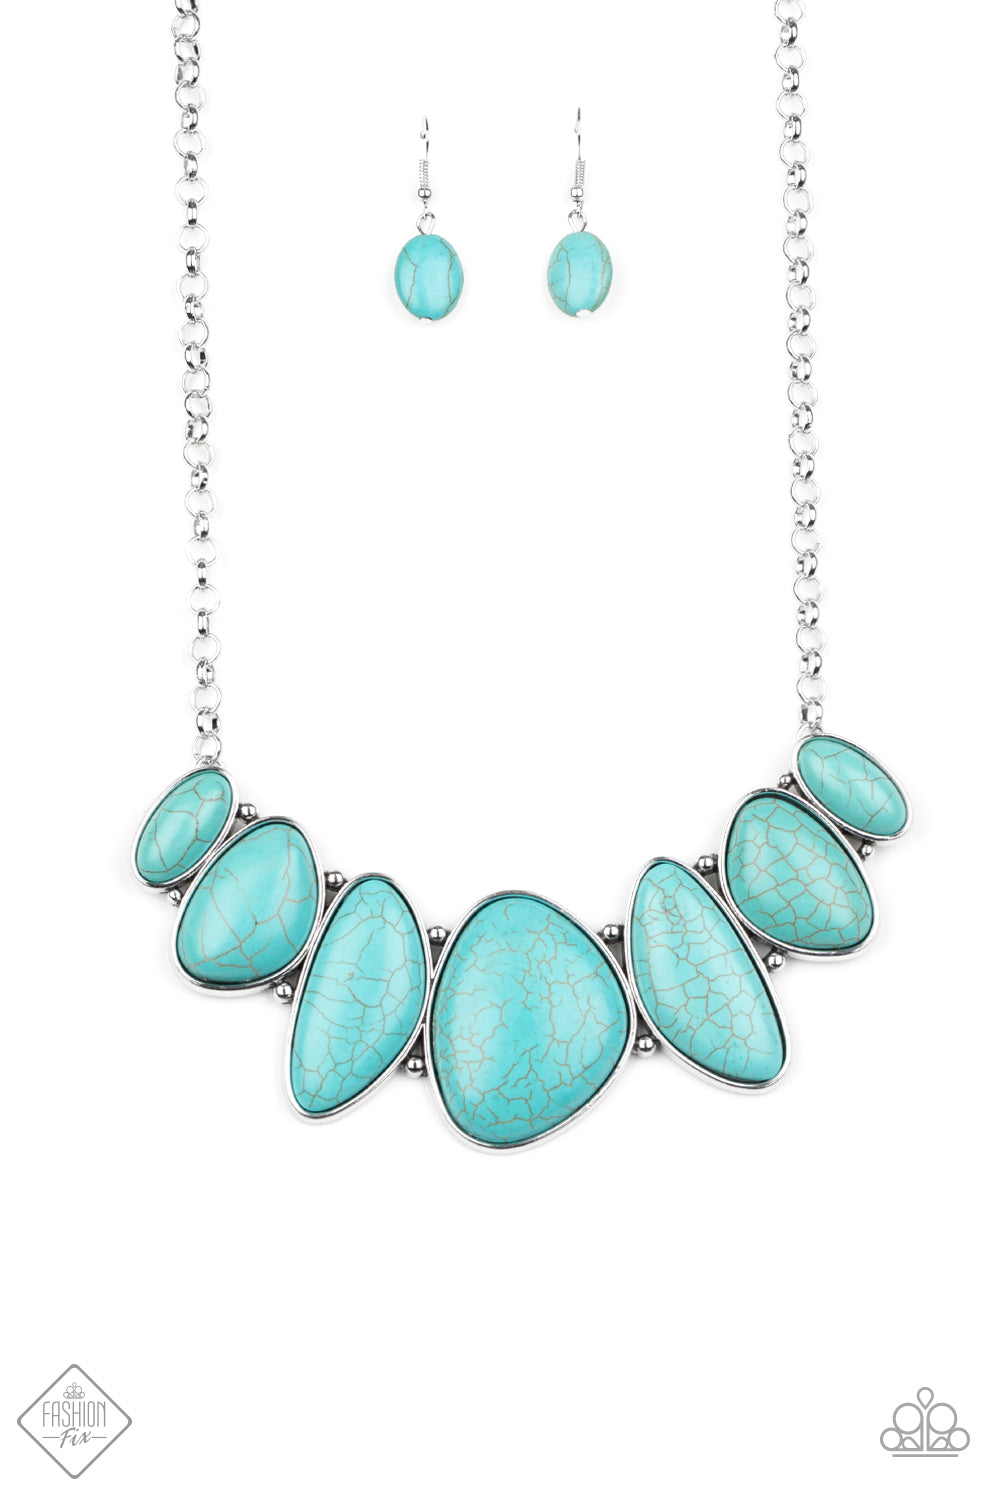 Primitive - blue - Paparazzi necklace